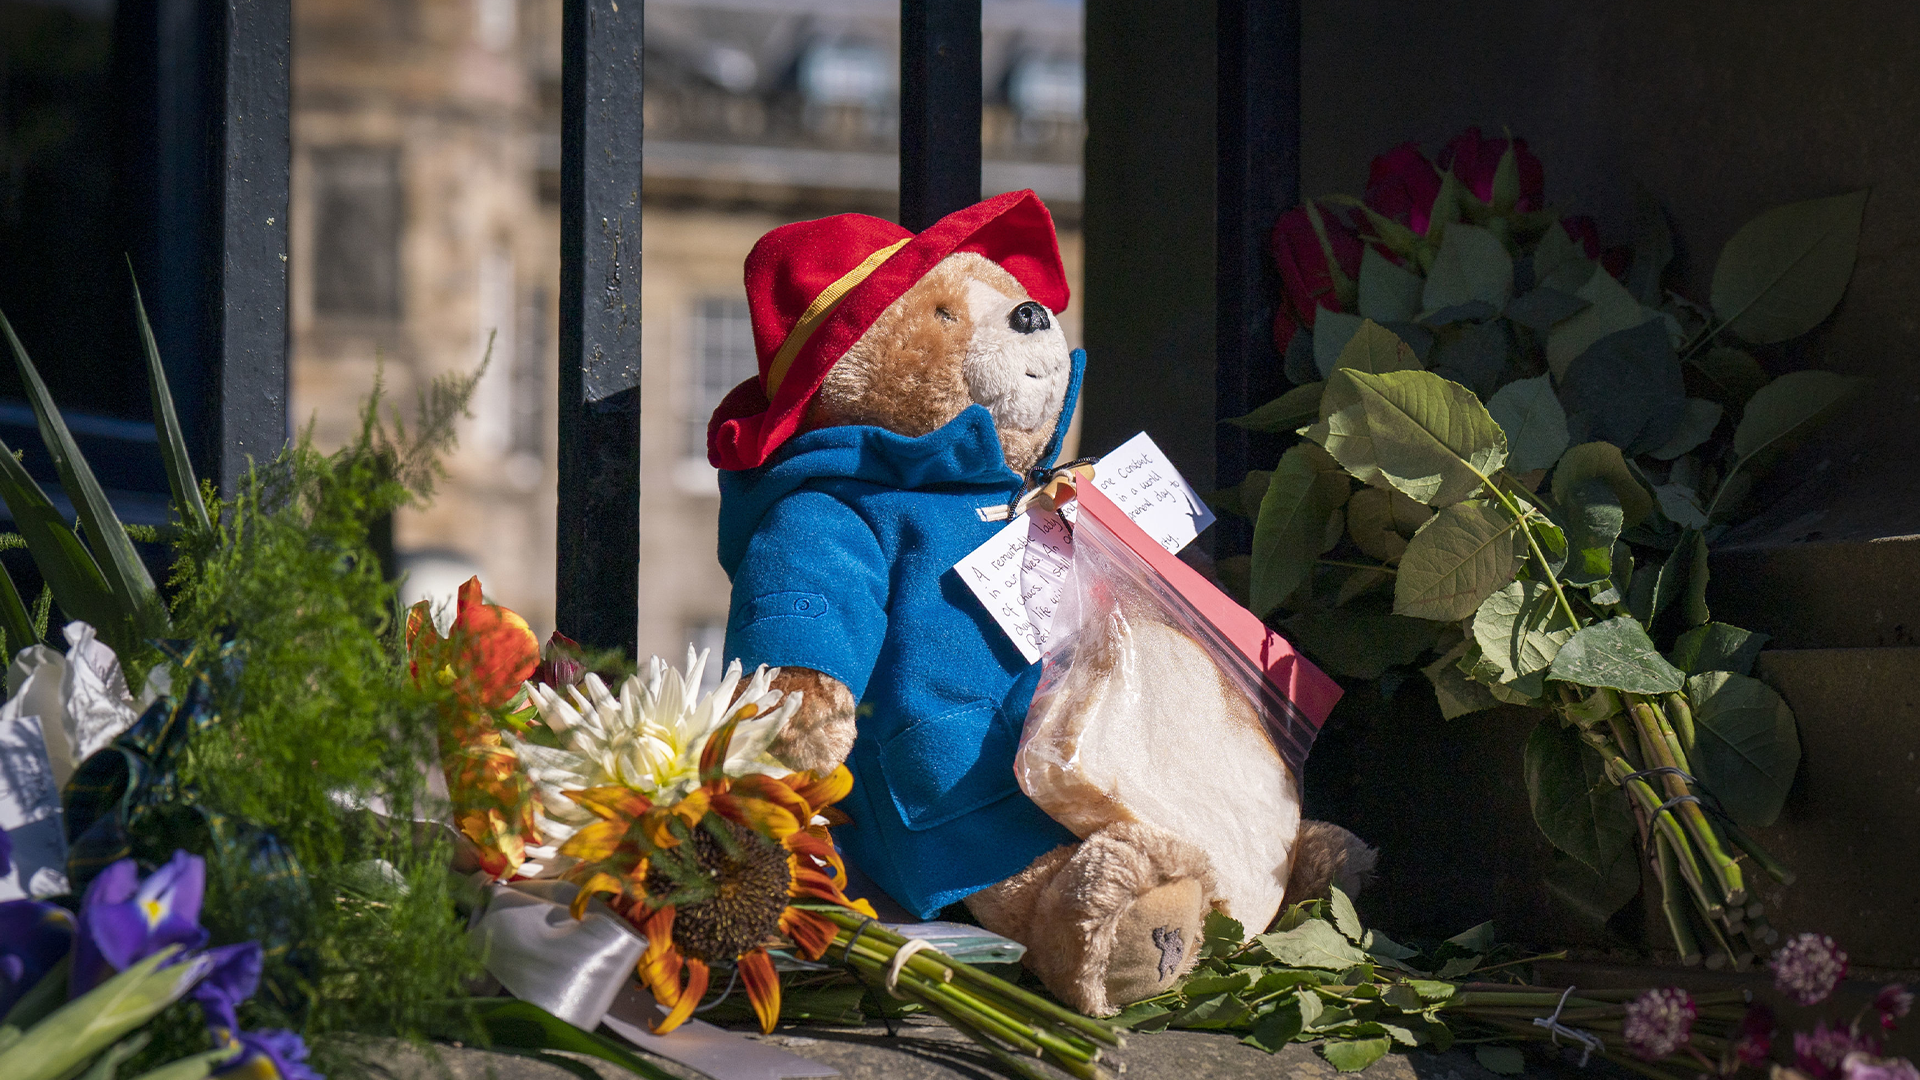 Plus de 1000 toutous de l'ours Paddington et autres peluches laissés en hommage à la défunte reine Élisabeth II, lors de rassemblements à Londres et à Windsor, seront remis à un organisme de bienfaisance pour enfants.